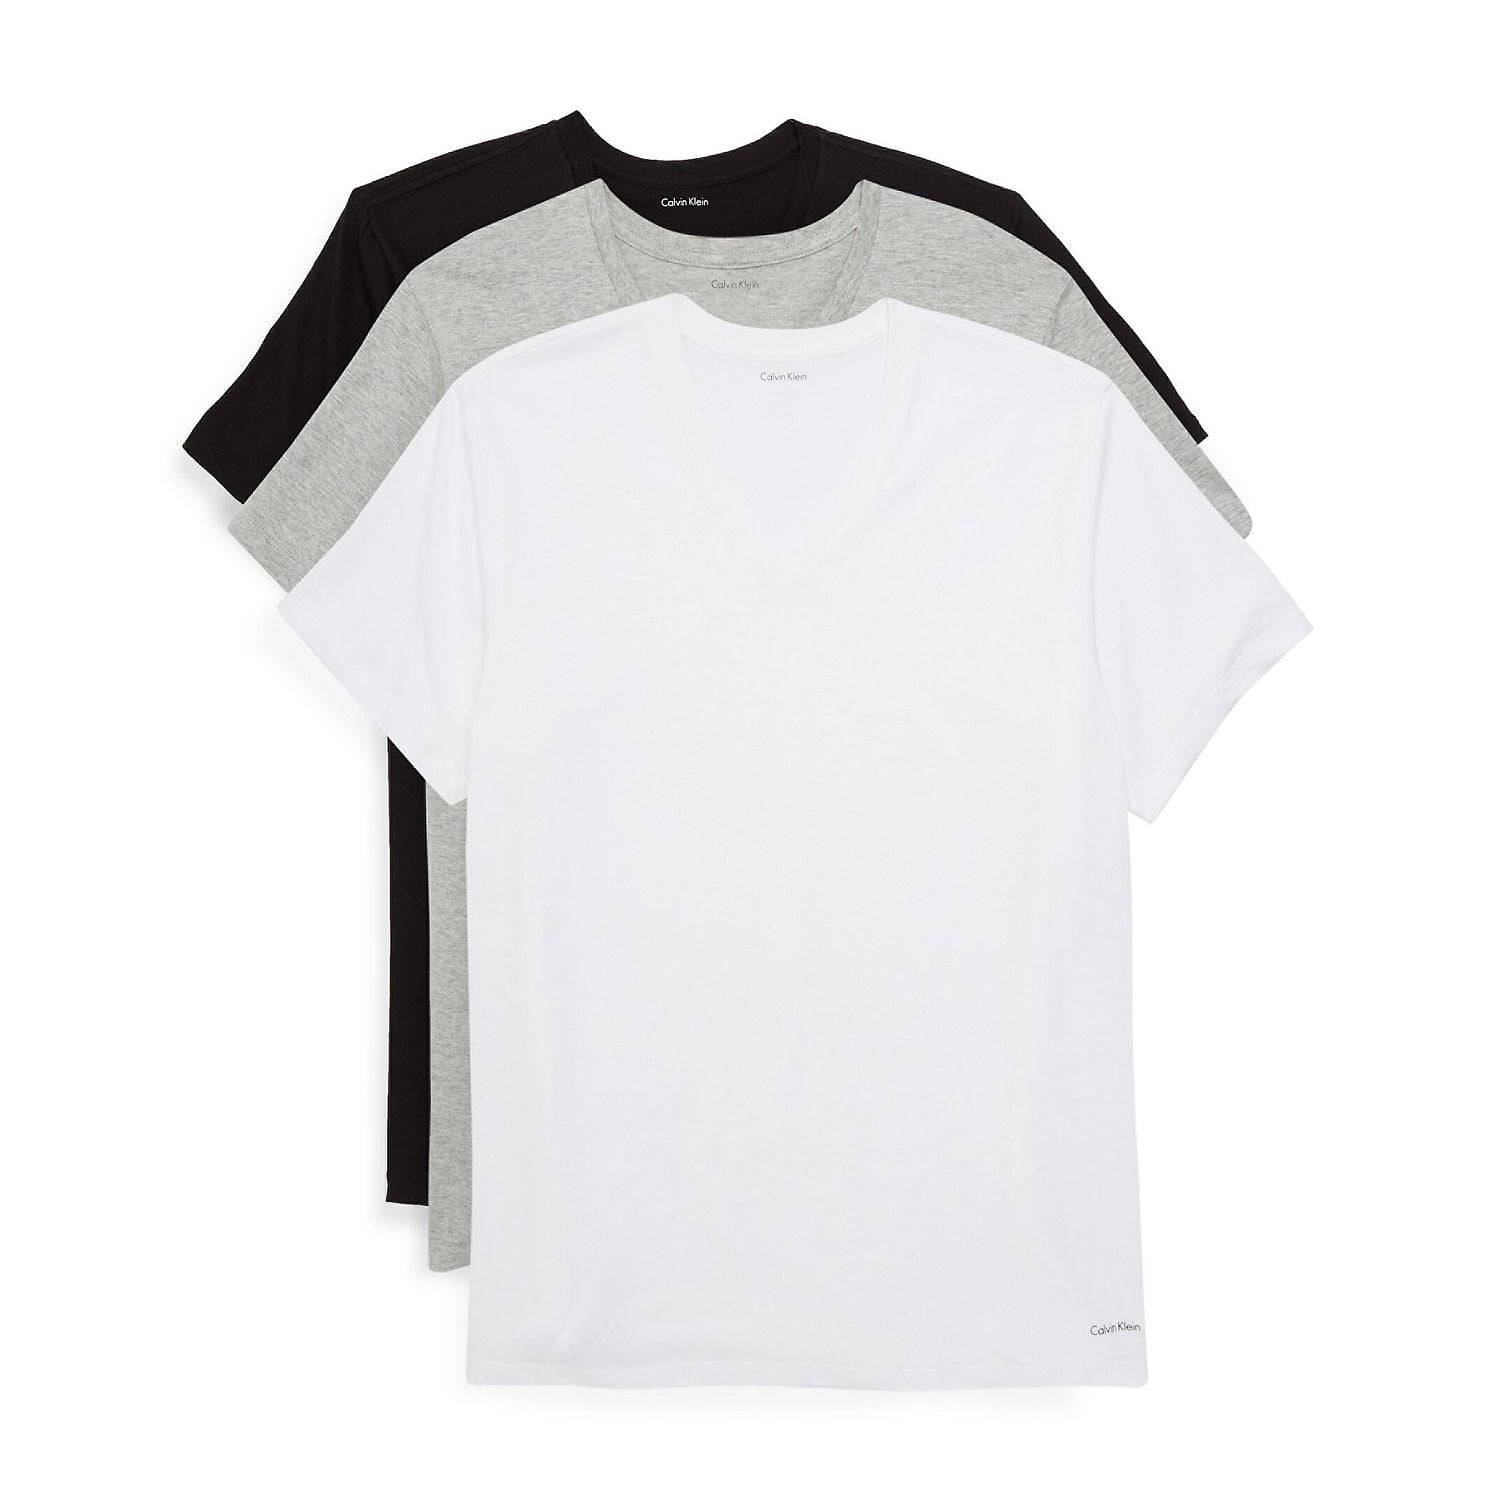 Calvin Klein Body Mens Cotton T-Shirts (Small, Black/White/Grey) -